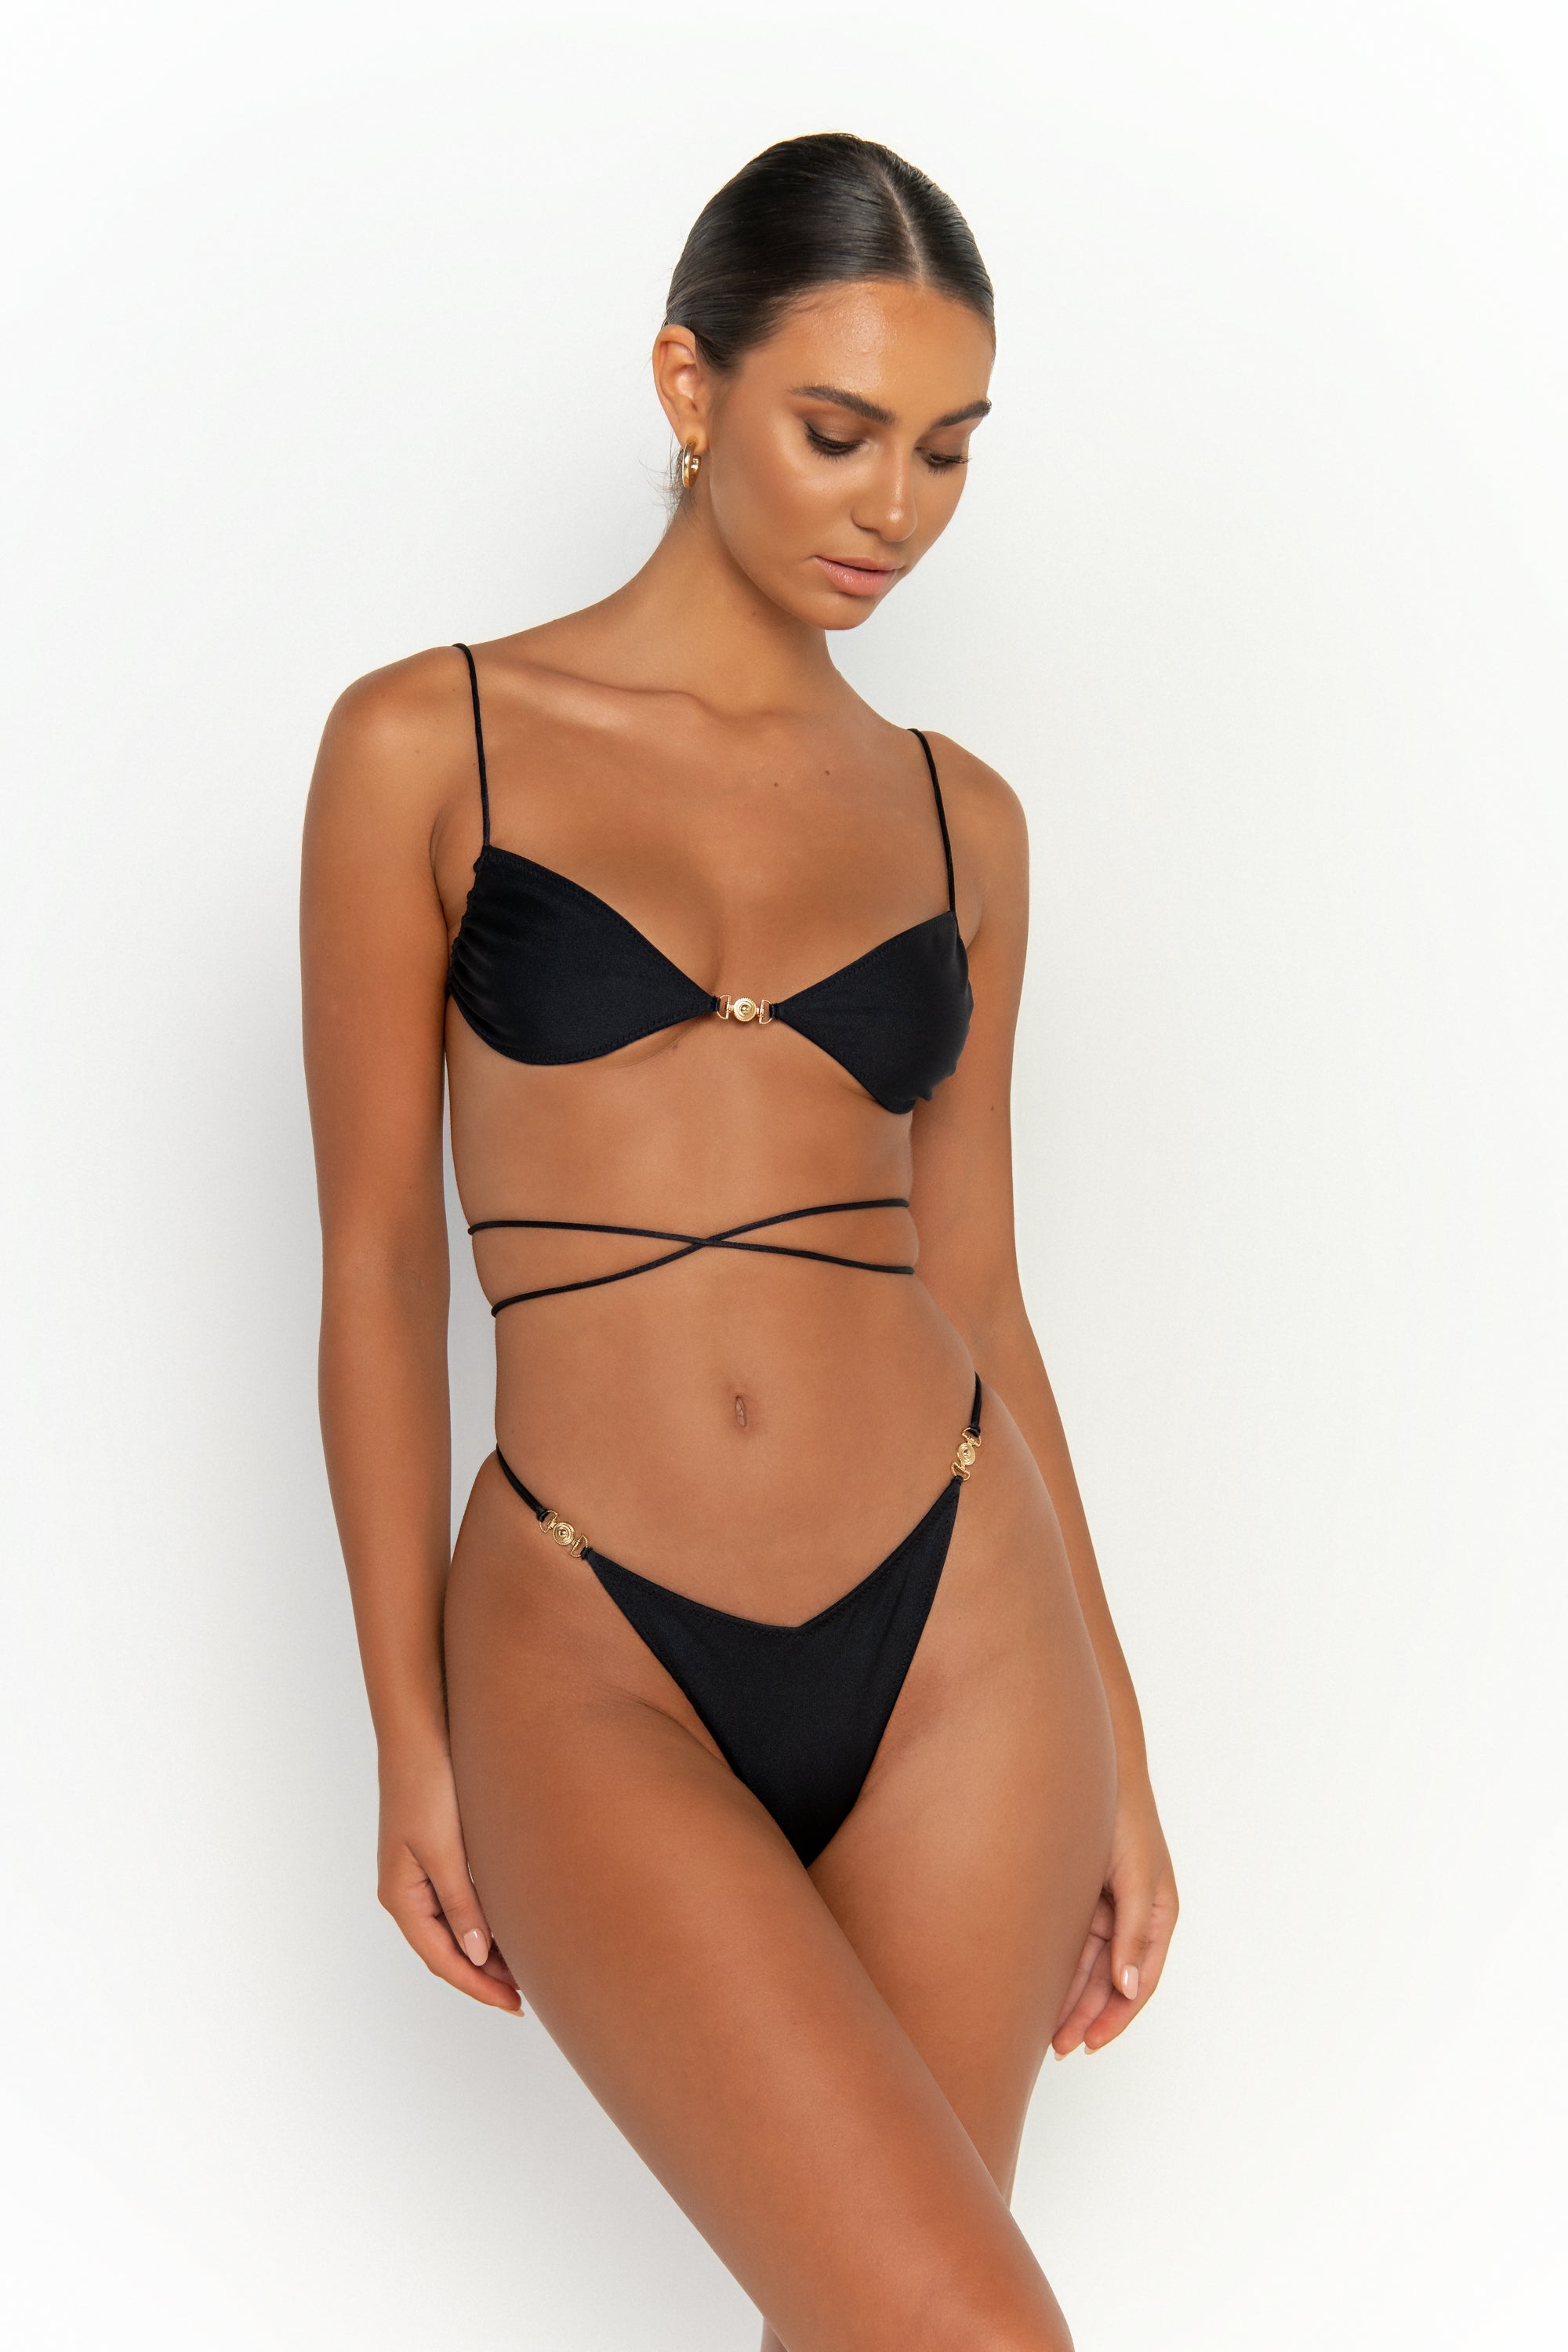 side view elegant woman wearing luxury swimsuit from sommer swim - ella nero is a black bikini with bralette bikini top